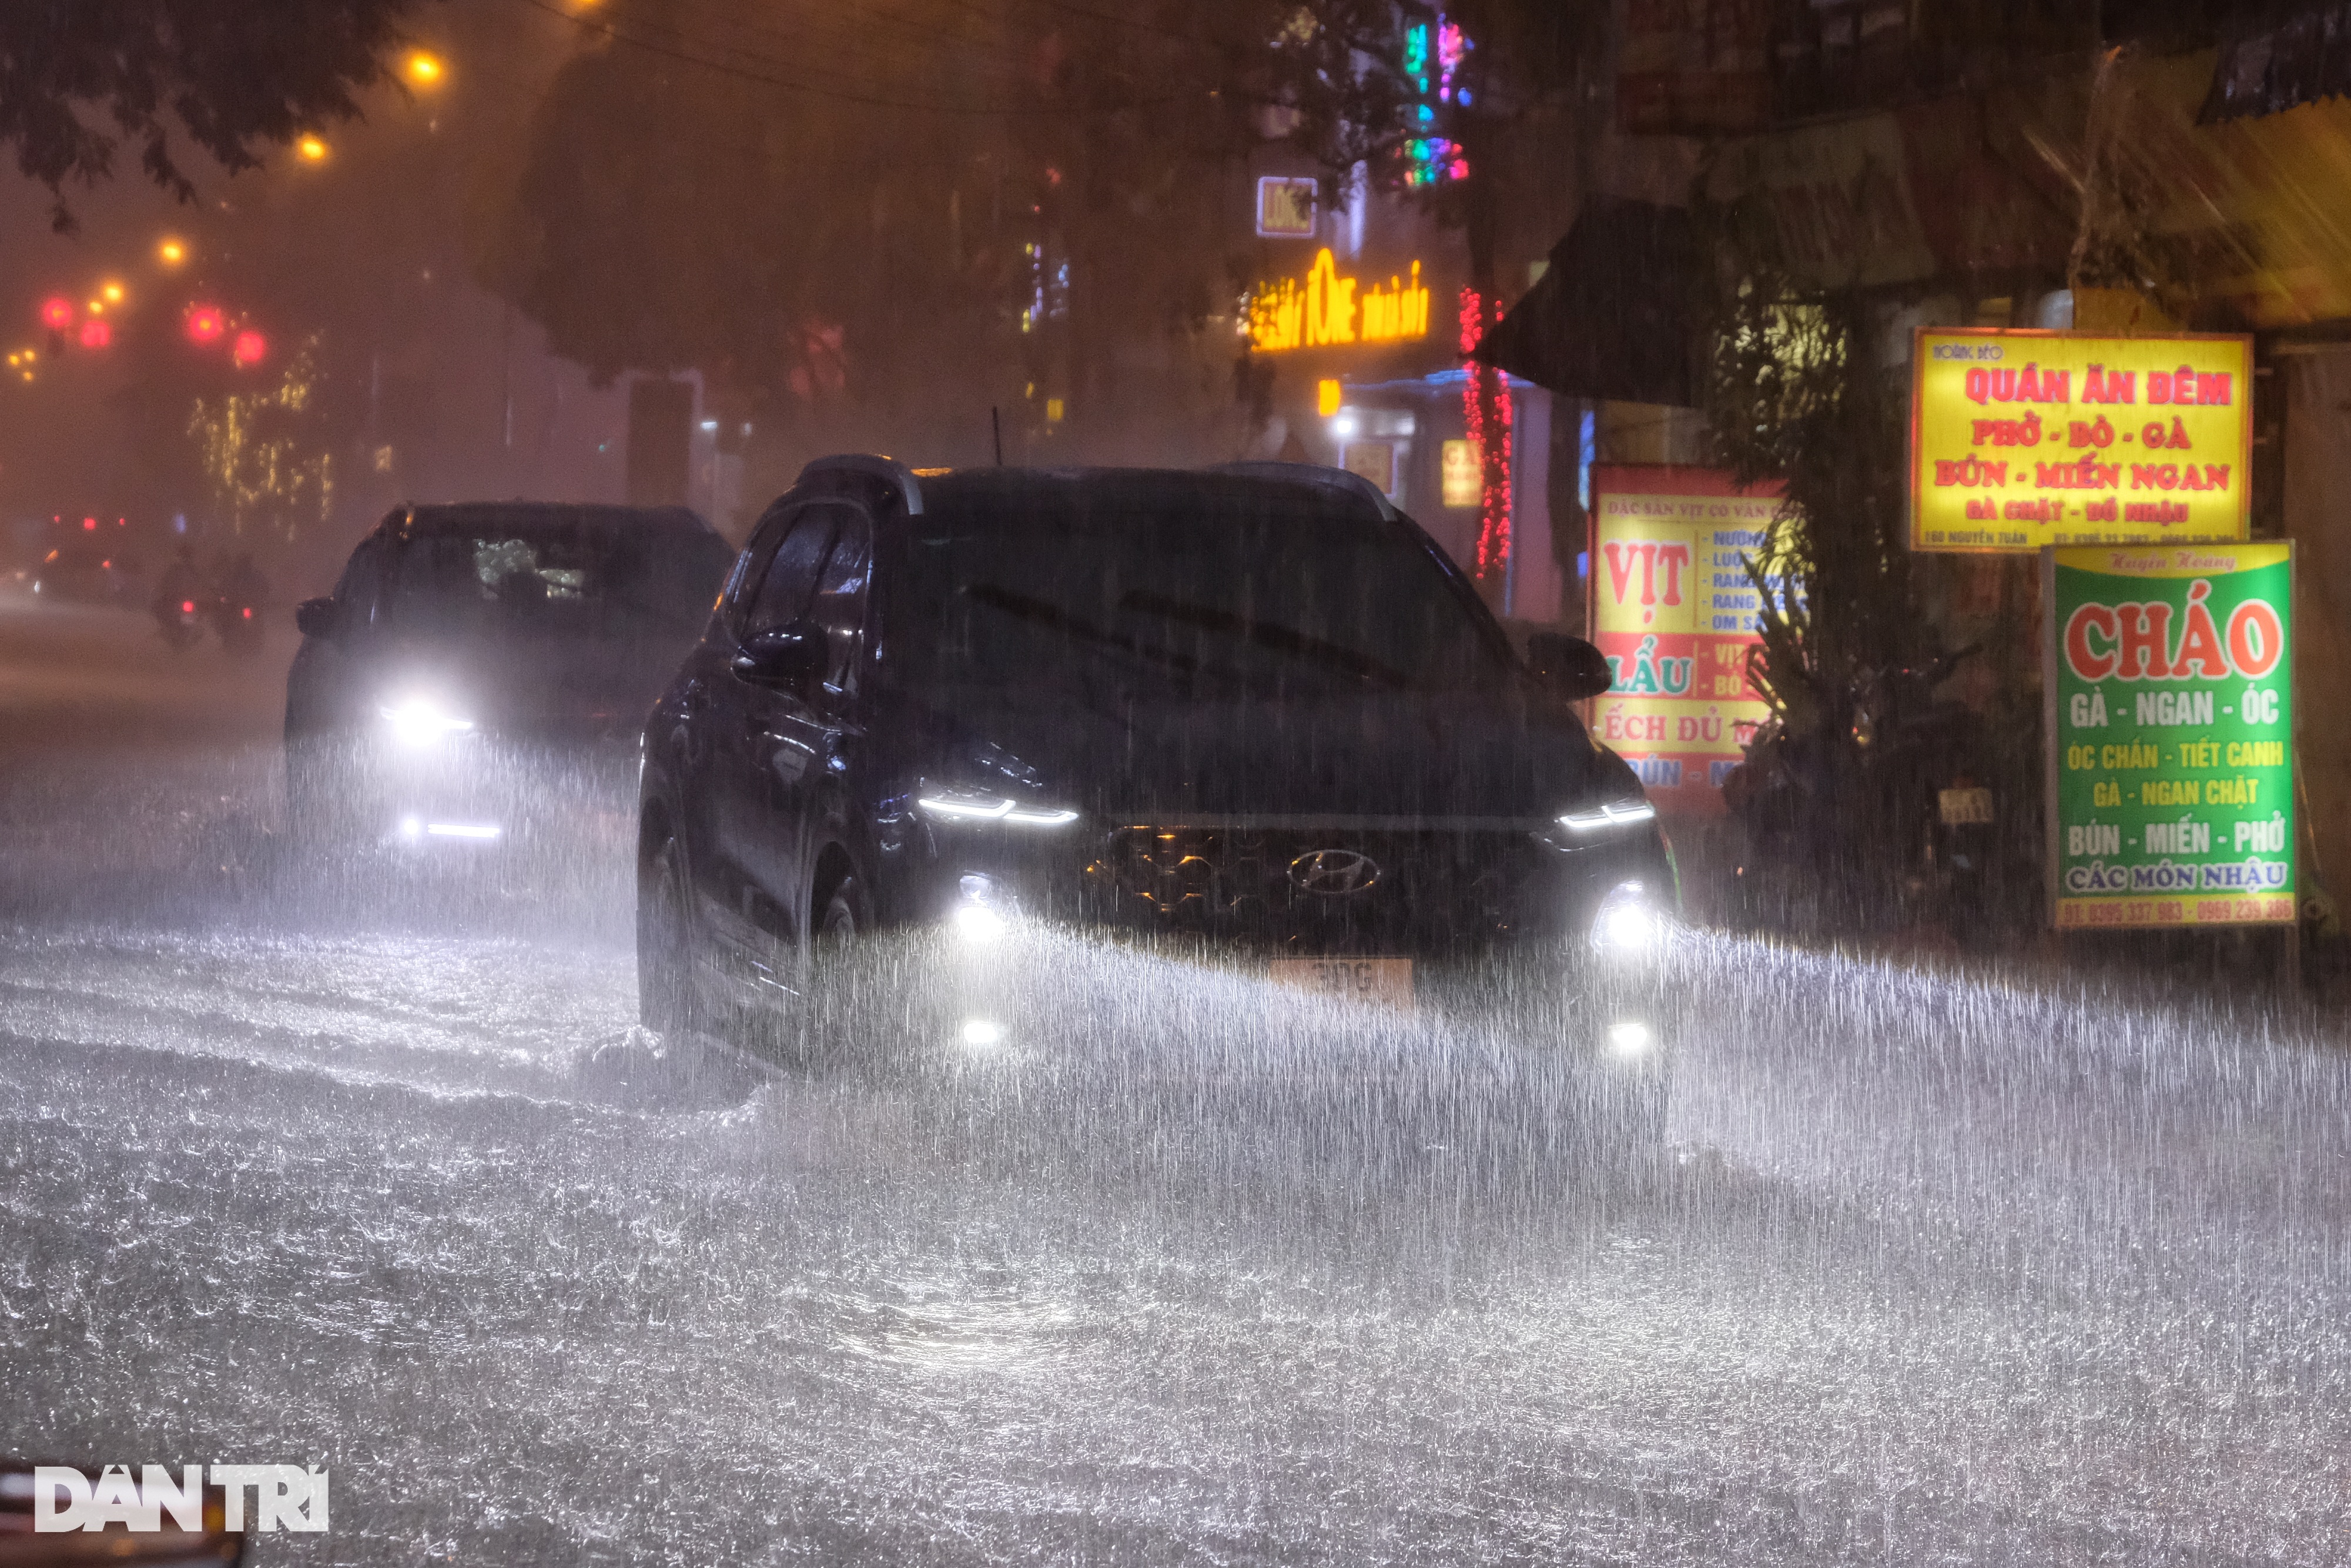 Cơn mưa lớn sầm sập đổ xuống, người Hà Nội chôn chân trên đường ngập - 2